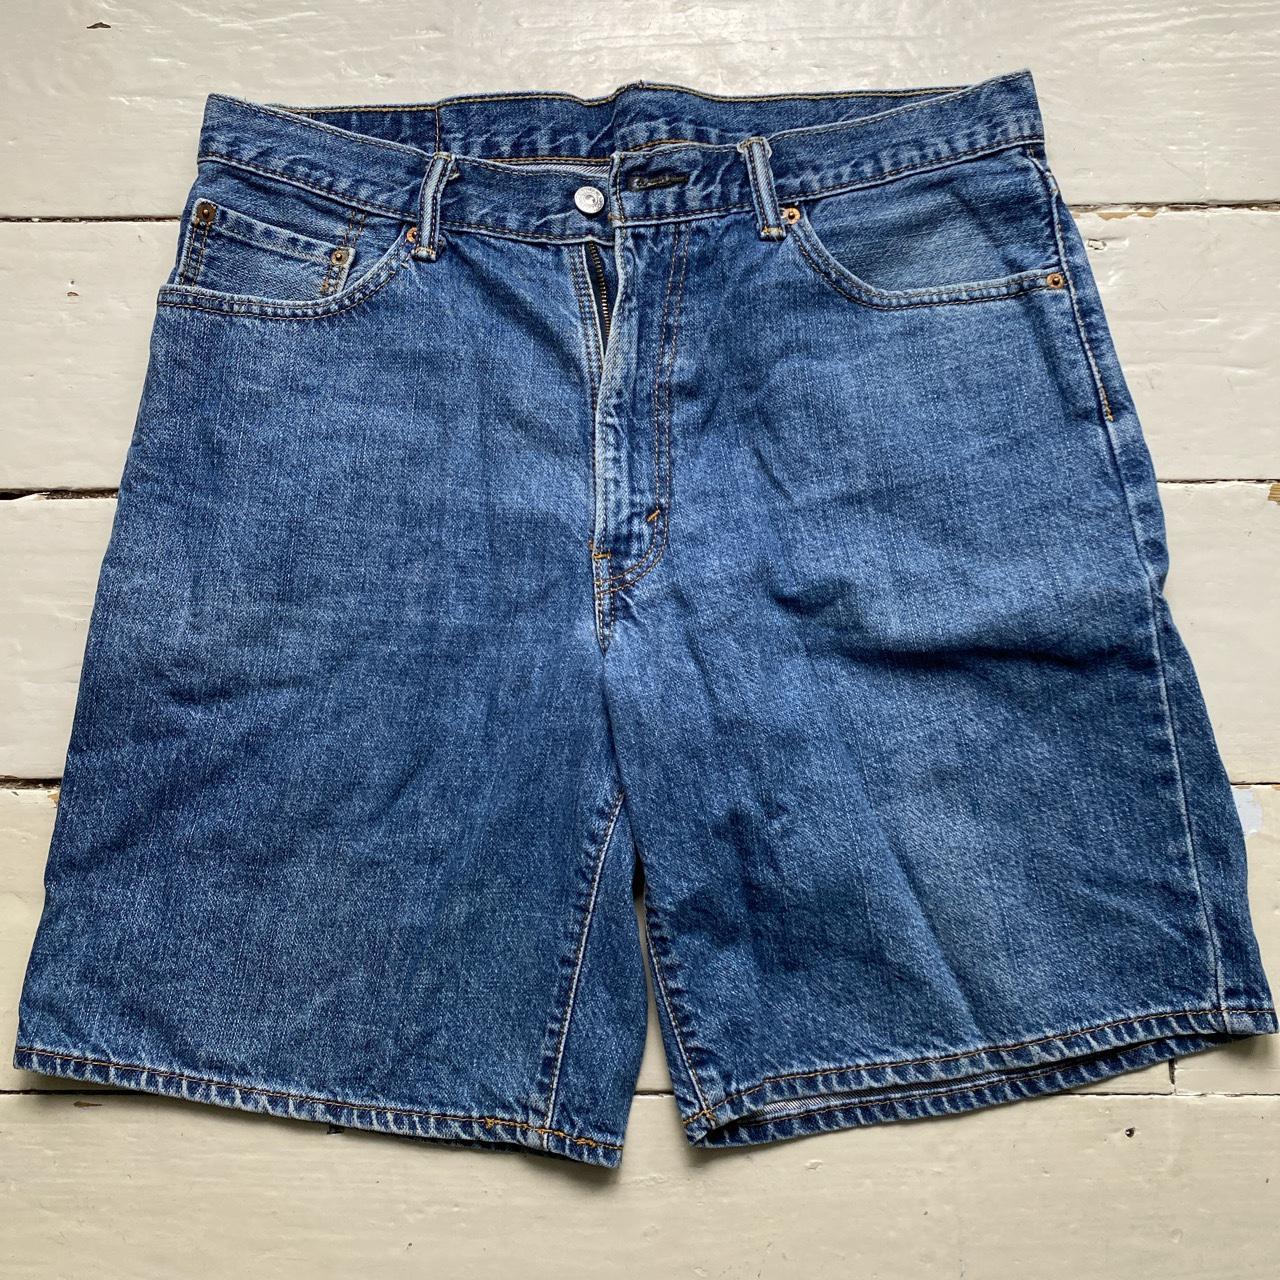 Levis 550 Baggy Blue Jean Short Jorts